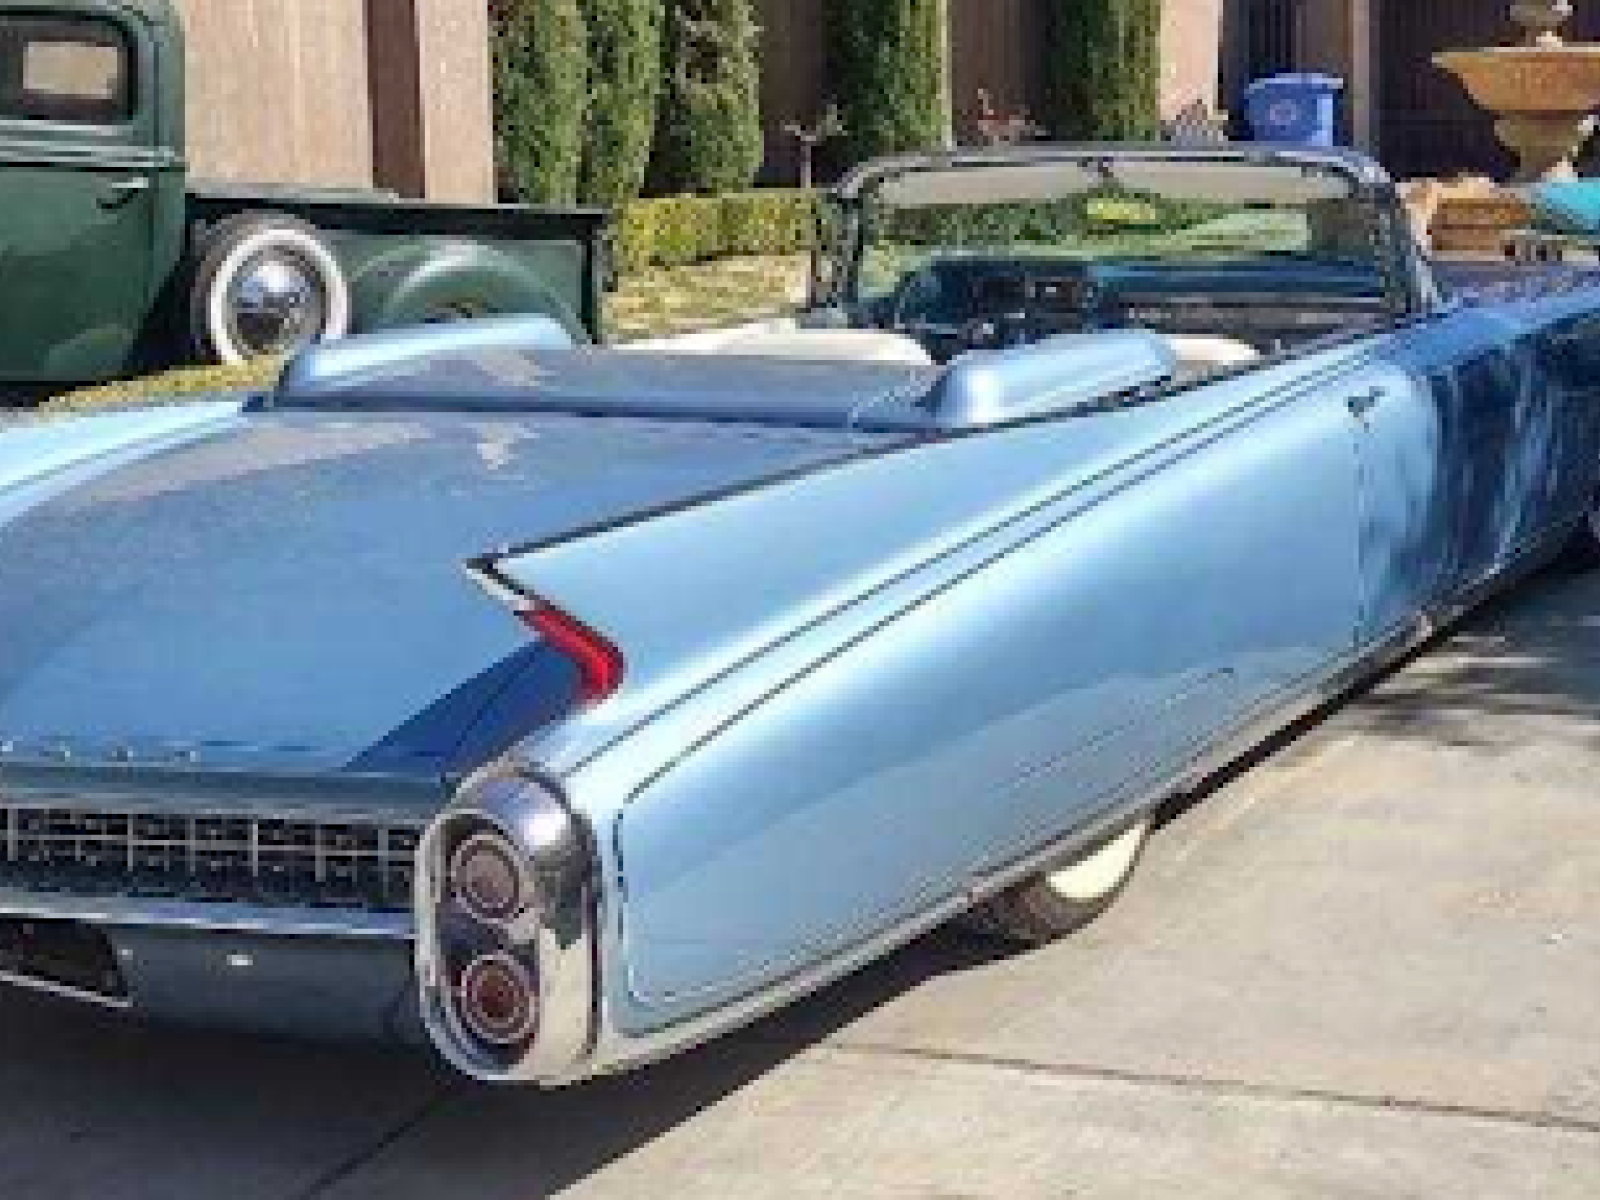 1960 Cadillac El Dorado